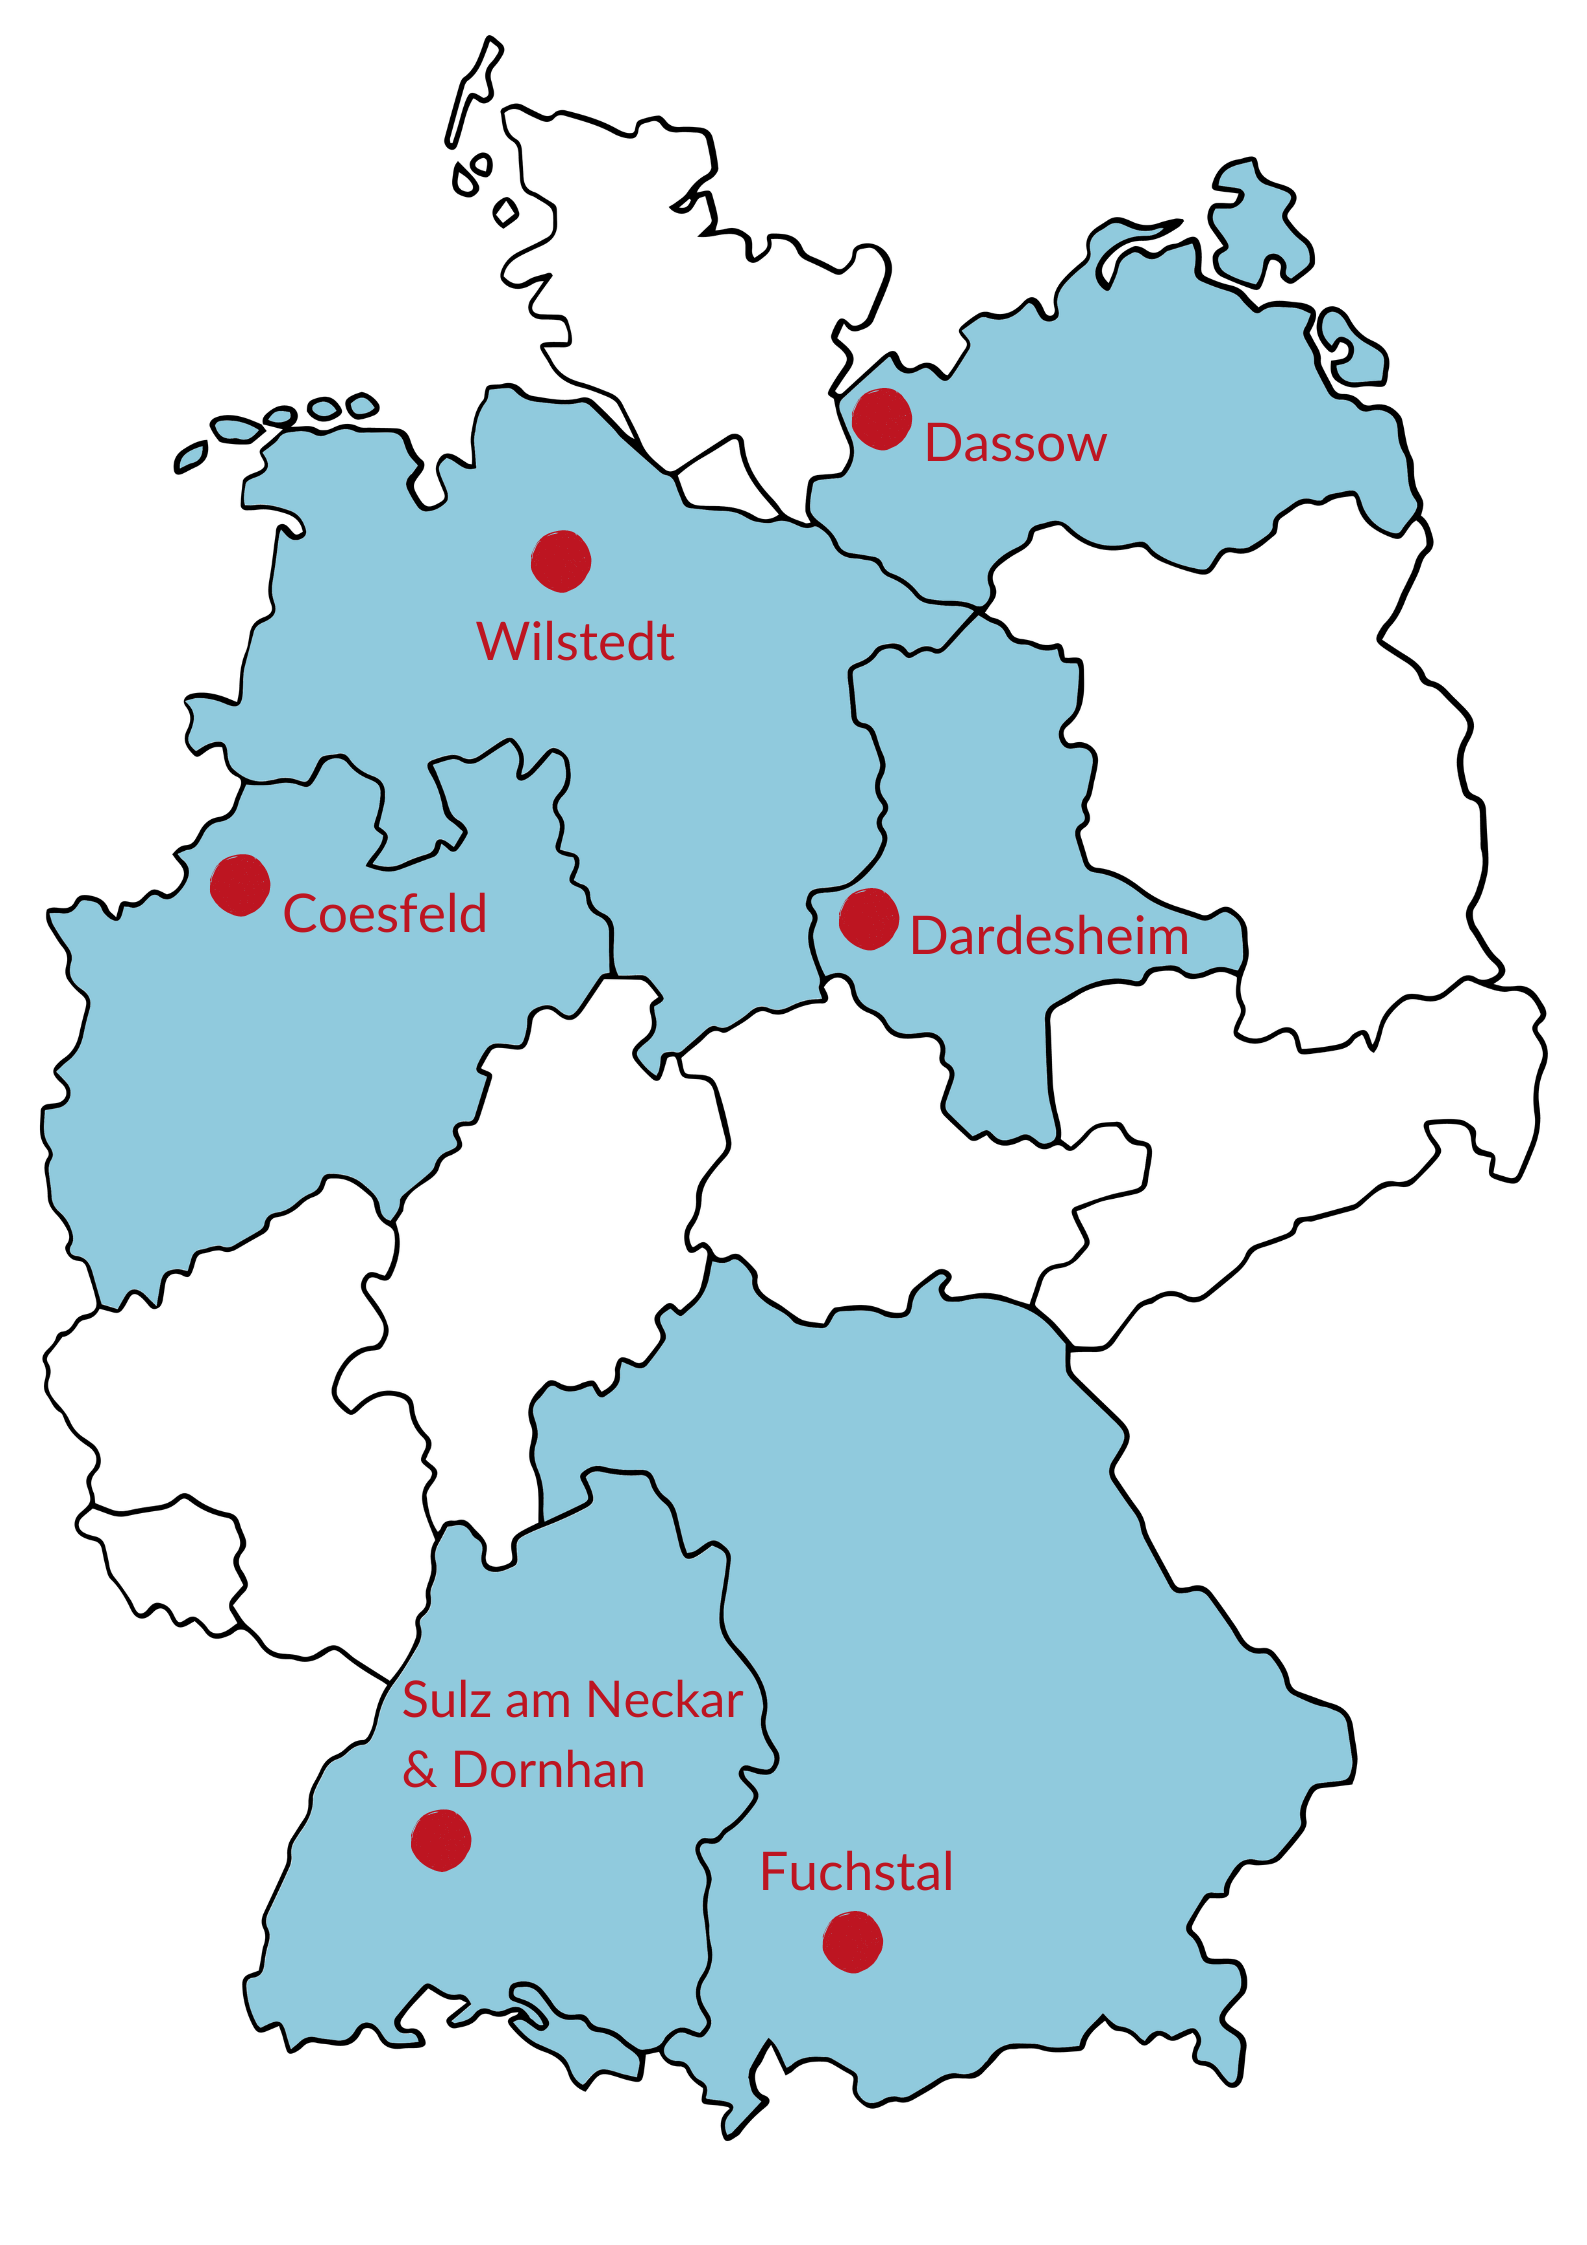 Man sieht eine Deutschlandkarte, auf der alle Orte eingezeichnet sind, zu denen der WindRat ein best practice-Video produziert hat. Die Bundesländer dazu (Bayern, BaWü, NRW, Niedersachsen, Sachsen-Anhalt, Meck-Pom) sind hellblau eingefärbt.